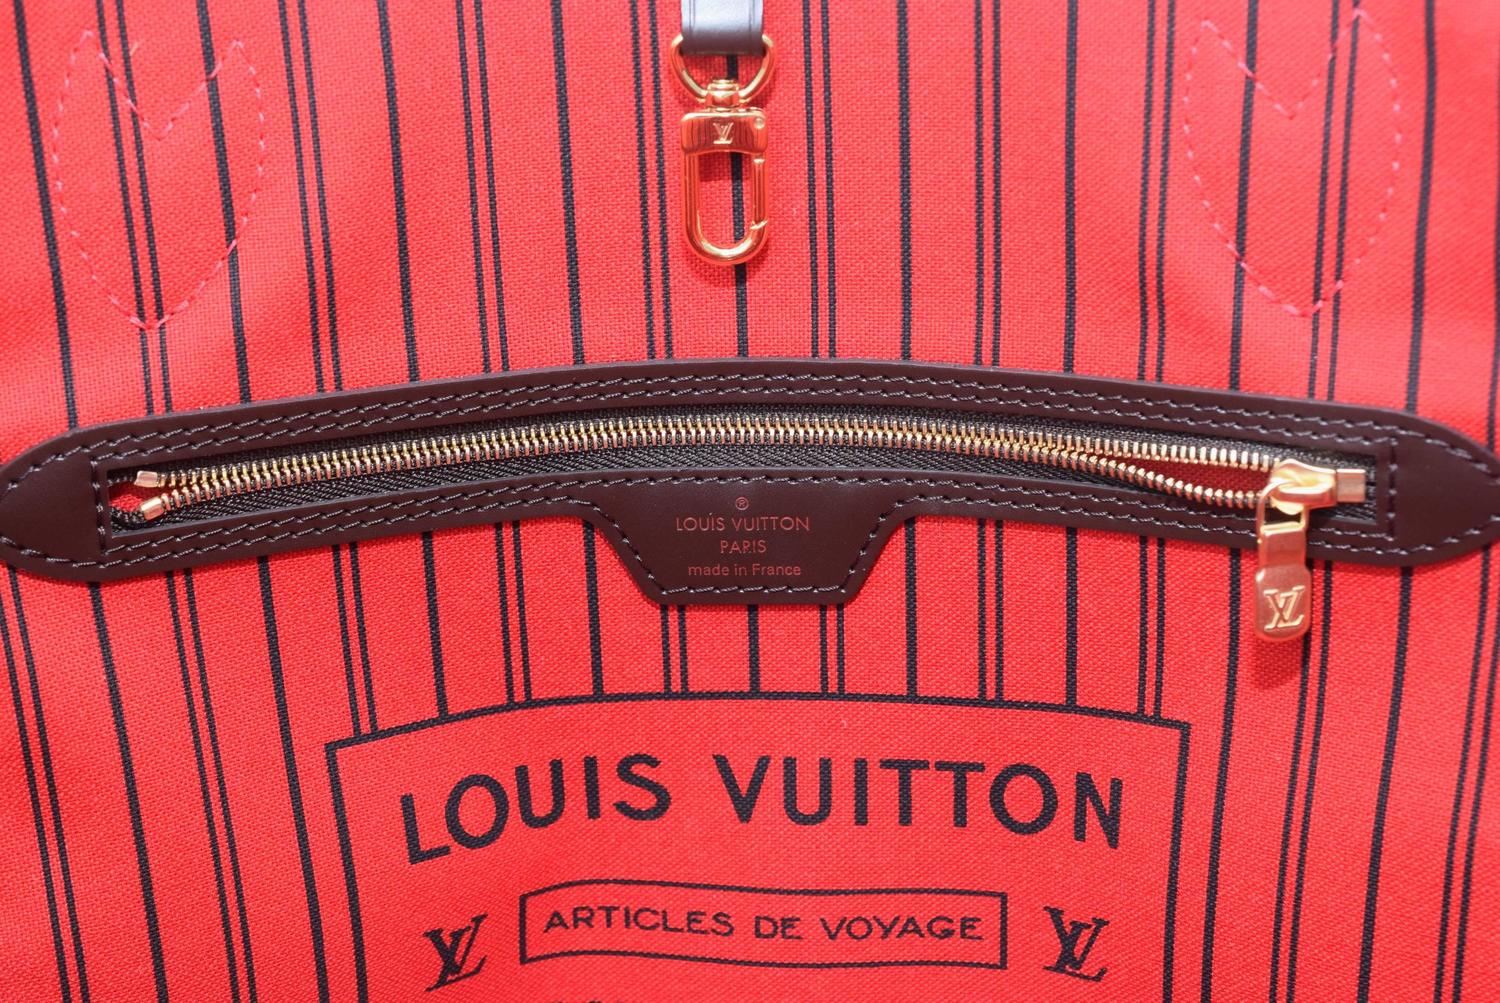 Louis Vuitton Date Code Ar1158 | SEMA Data Co-op